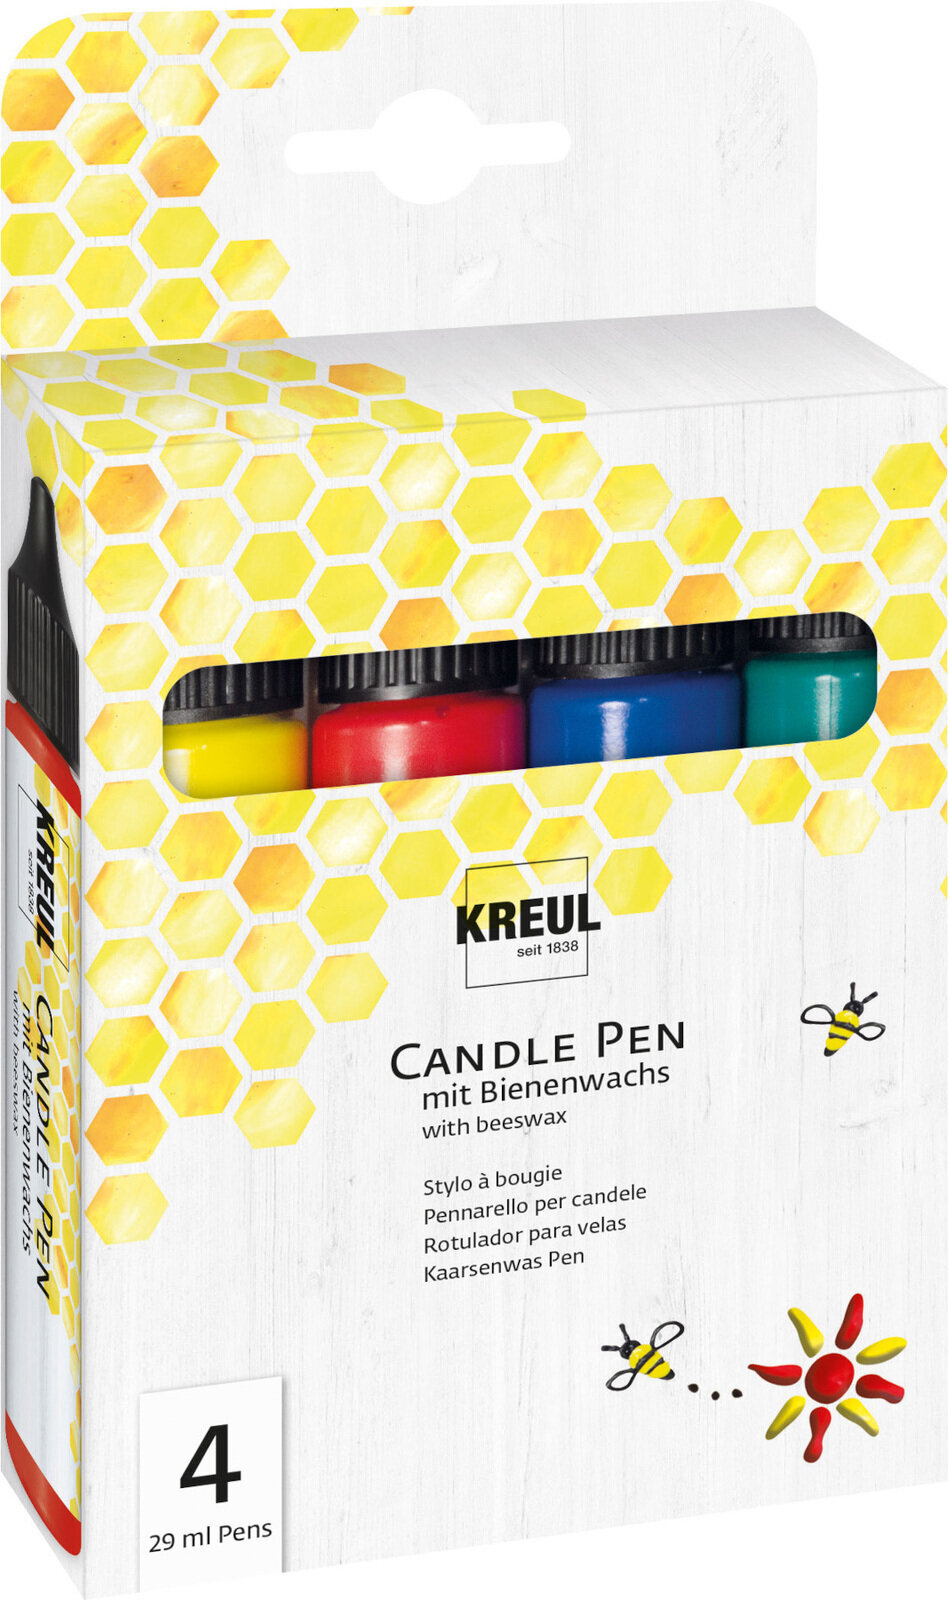 Filzstift Kreul Candle Pen Set